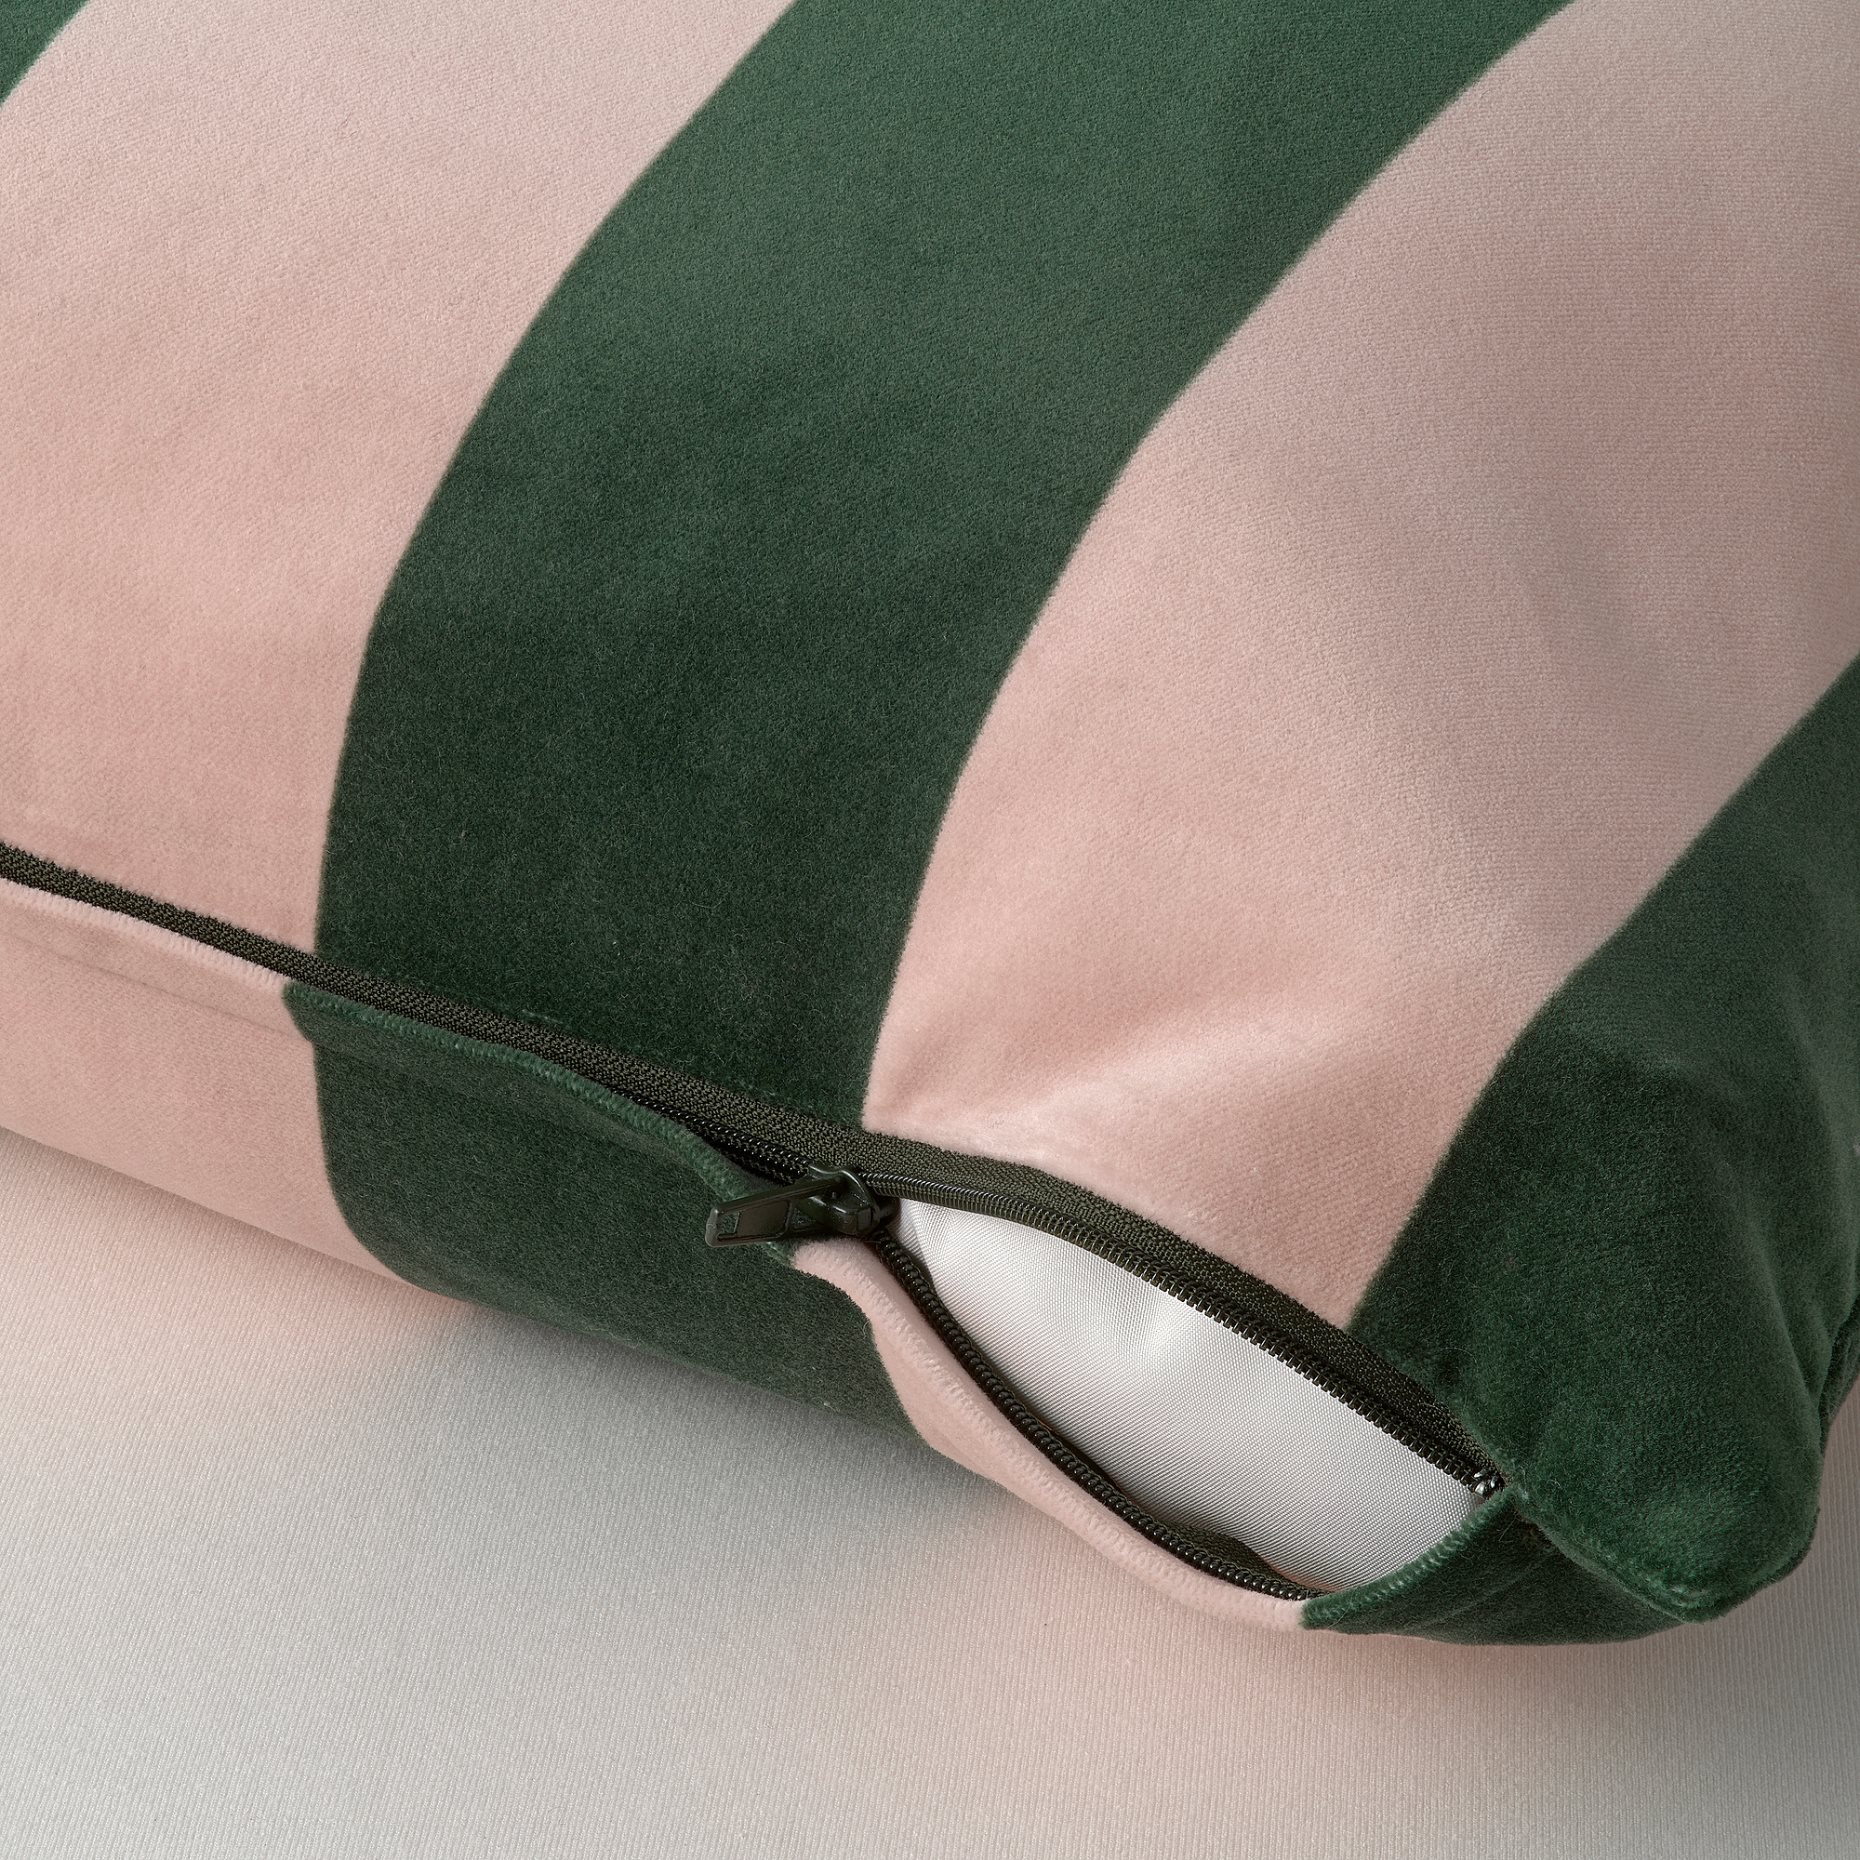 IDGRAN, cushion cover, 50x50 cm, 805.802.41